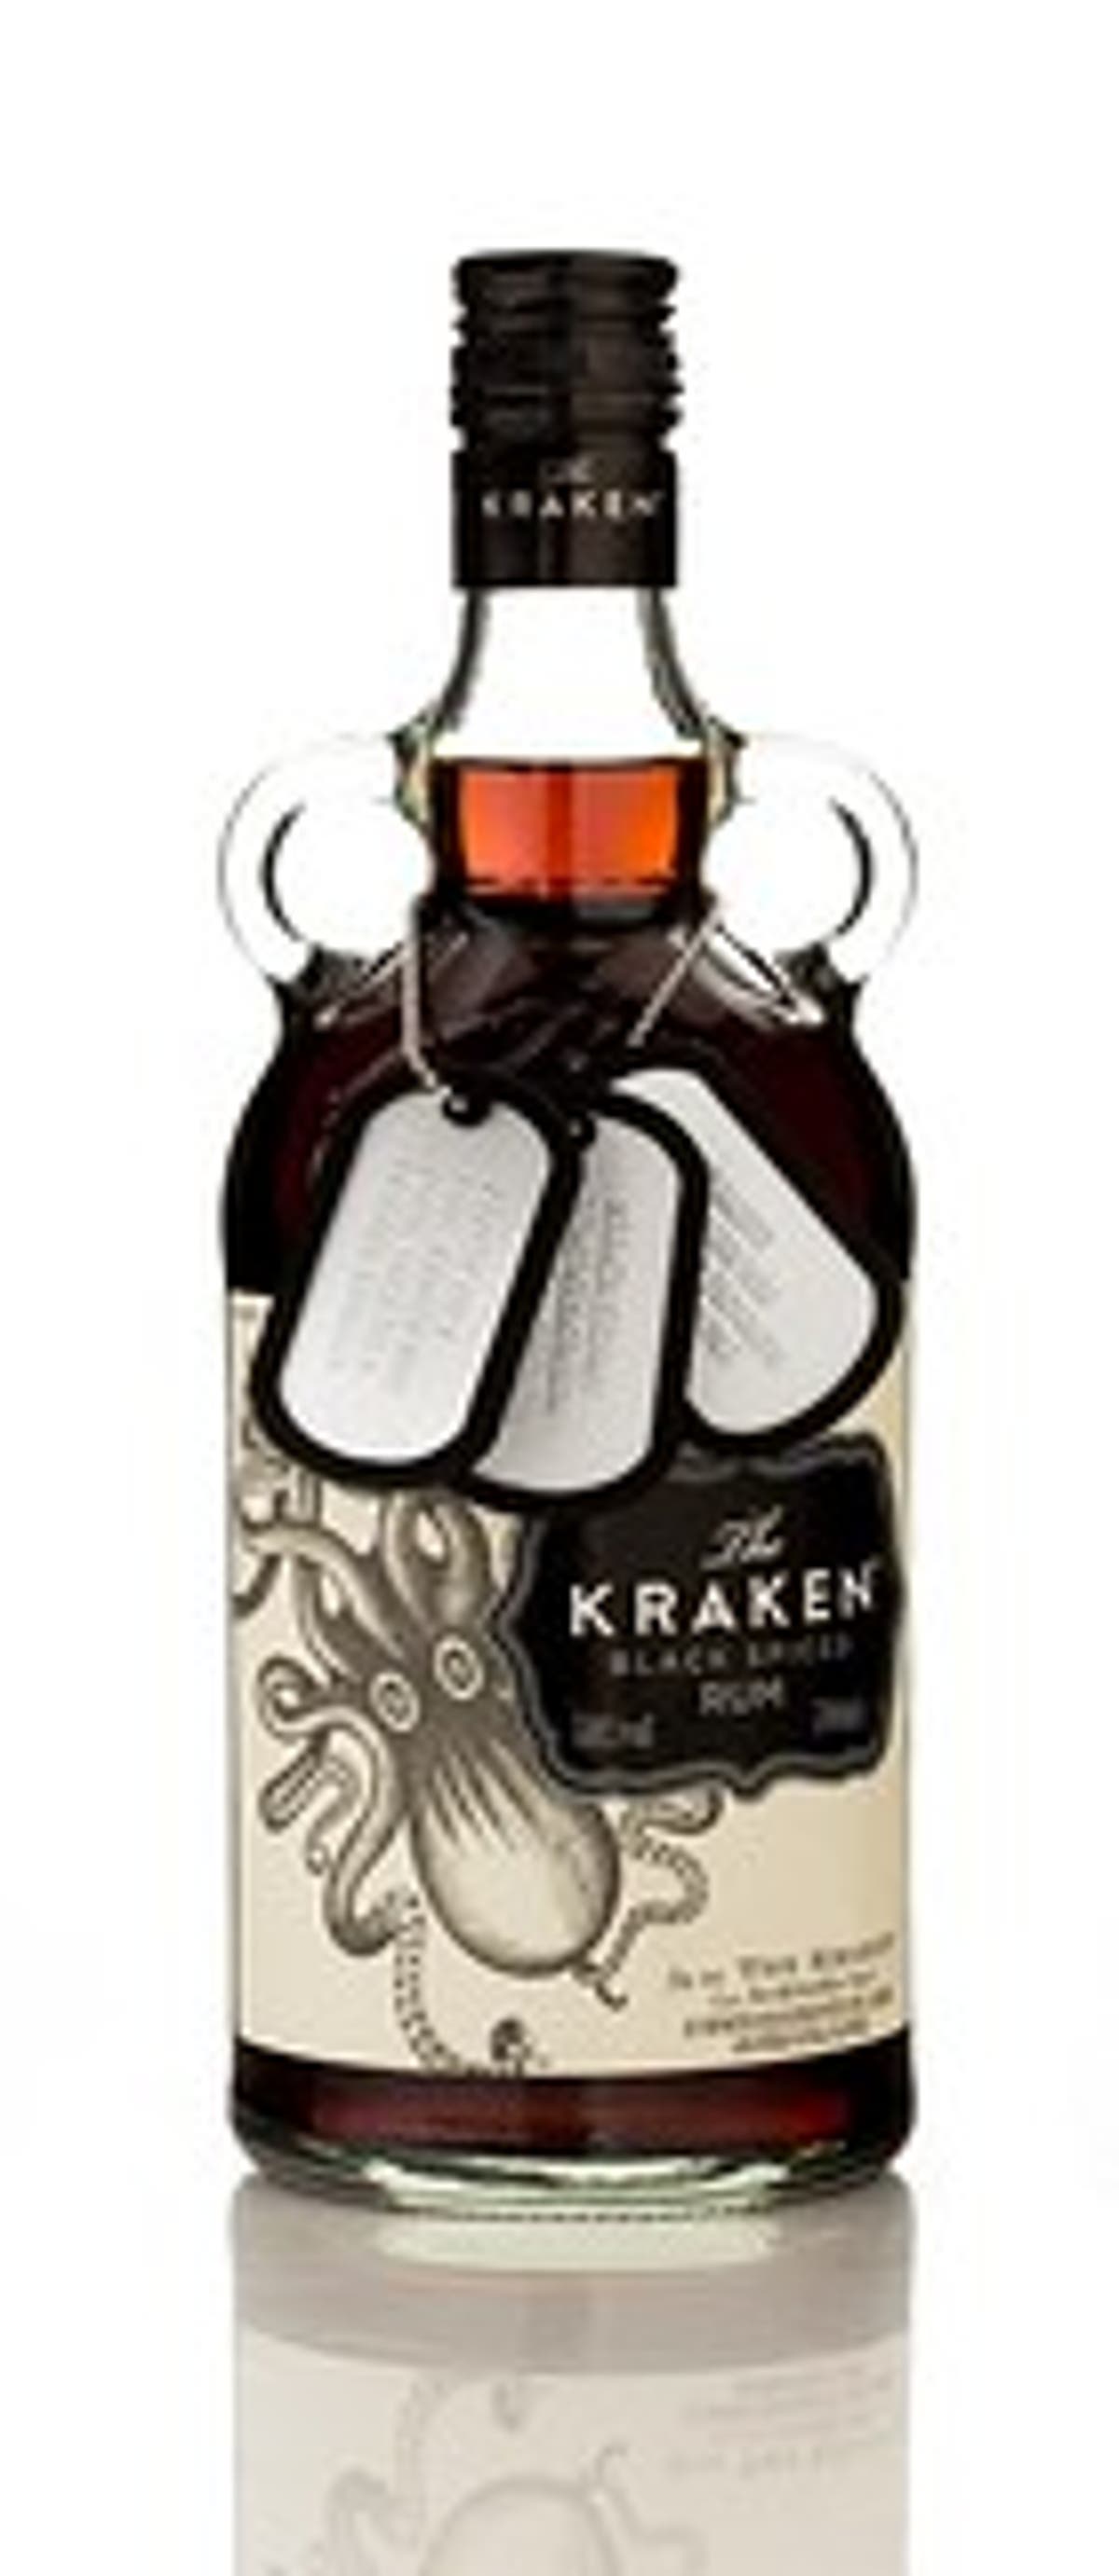 Kraken Black Spiced Rum lanza un pack con tres recetas para llenar de sabor  las fiestas - El buen vivir de Juan Luis Recio